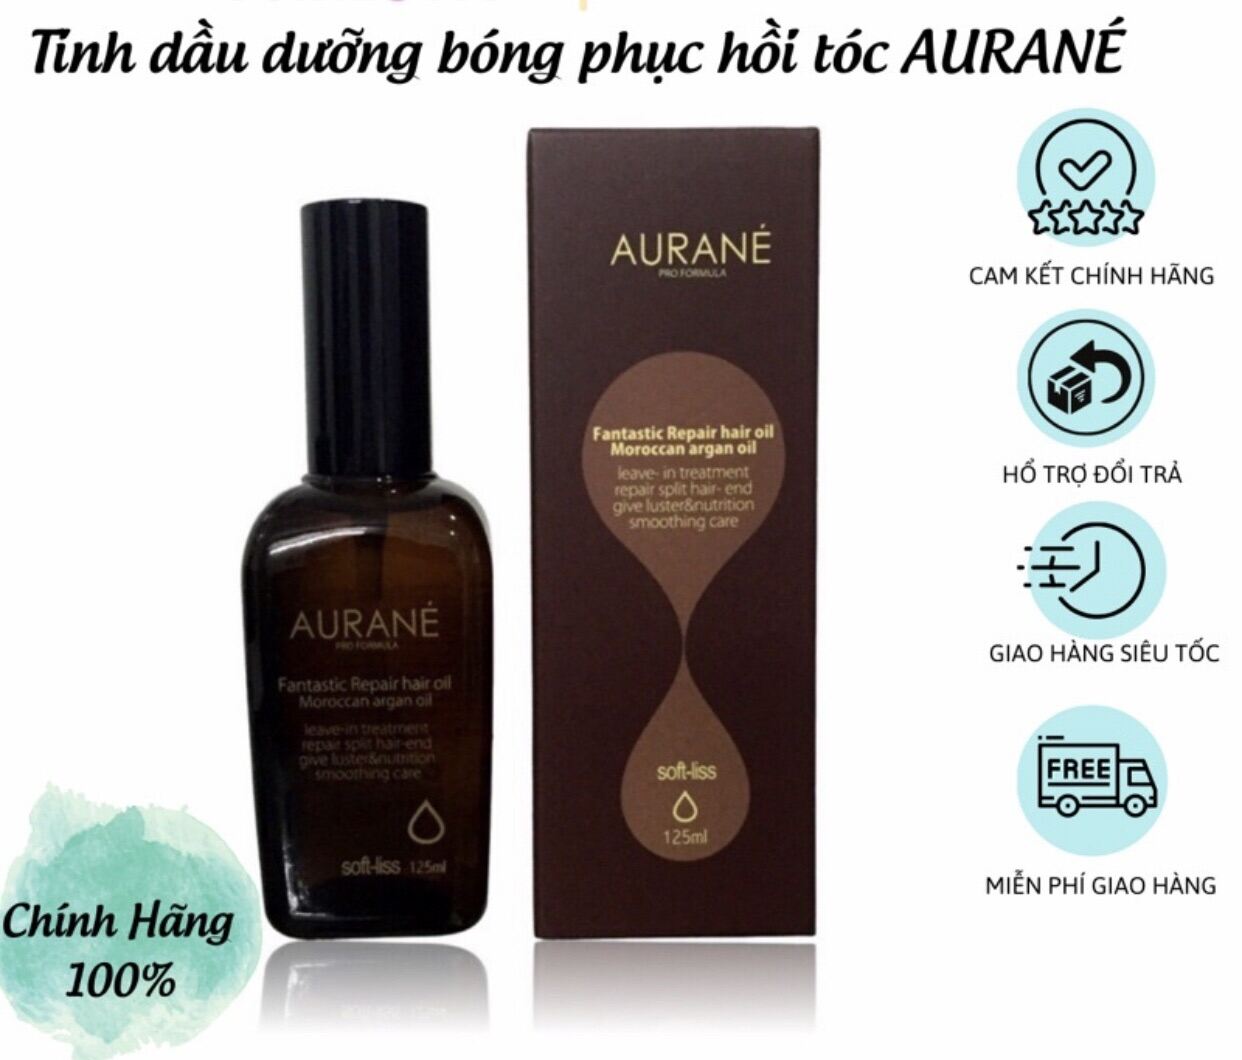 Tinh dầu dưỡng tóc AURANE 125ml nhập khẩu trực tiếp - mềm mượt nhanh chóng